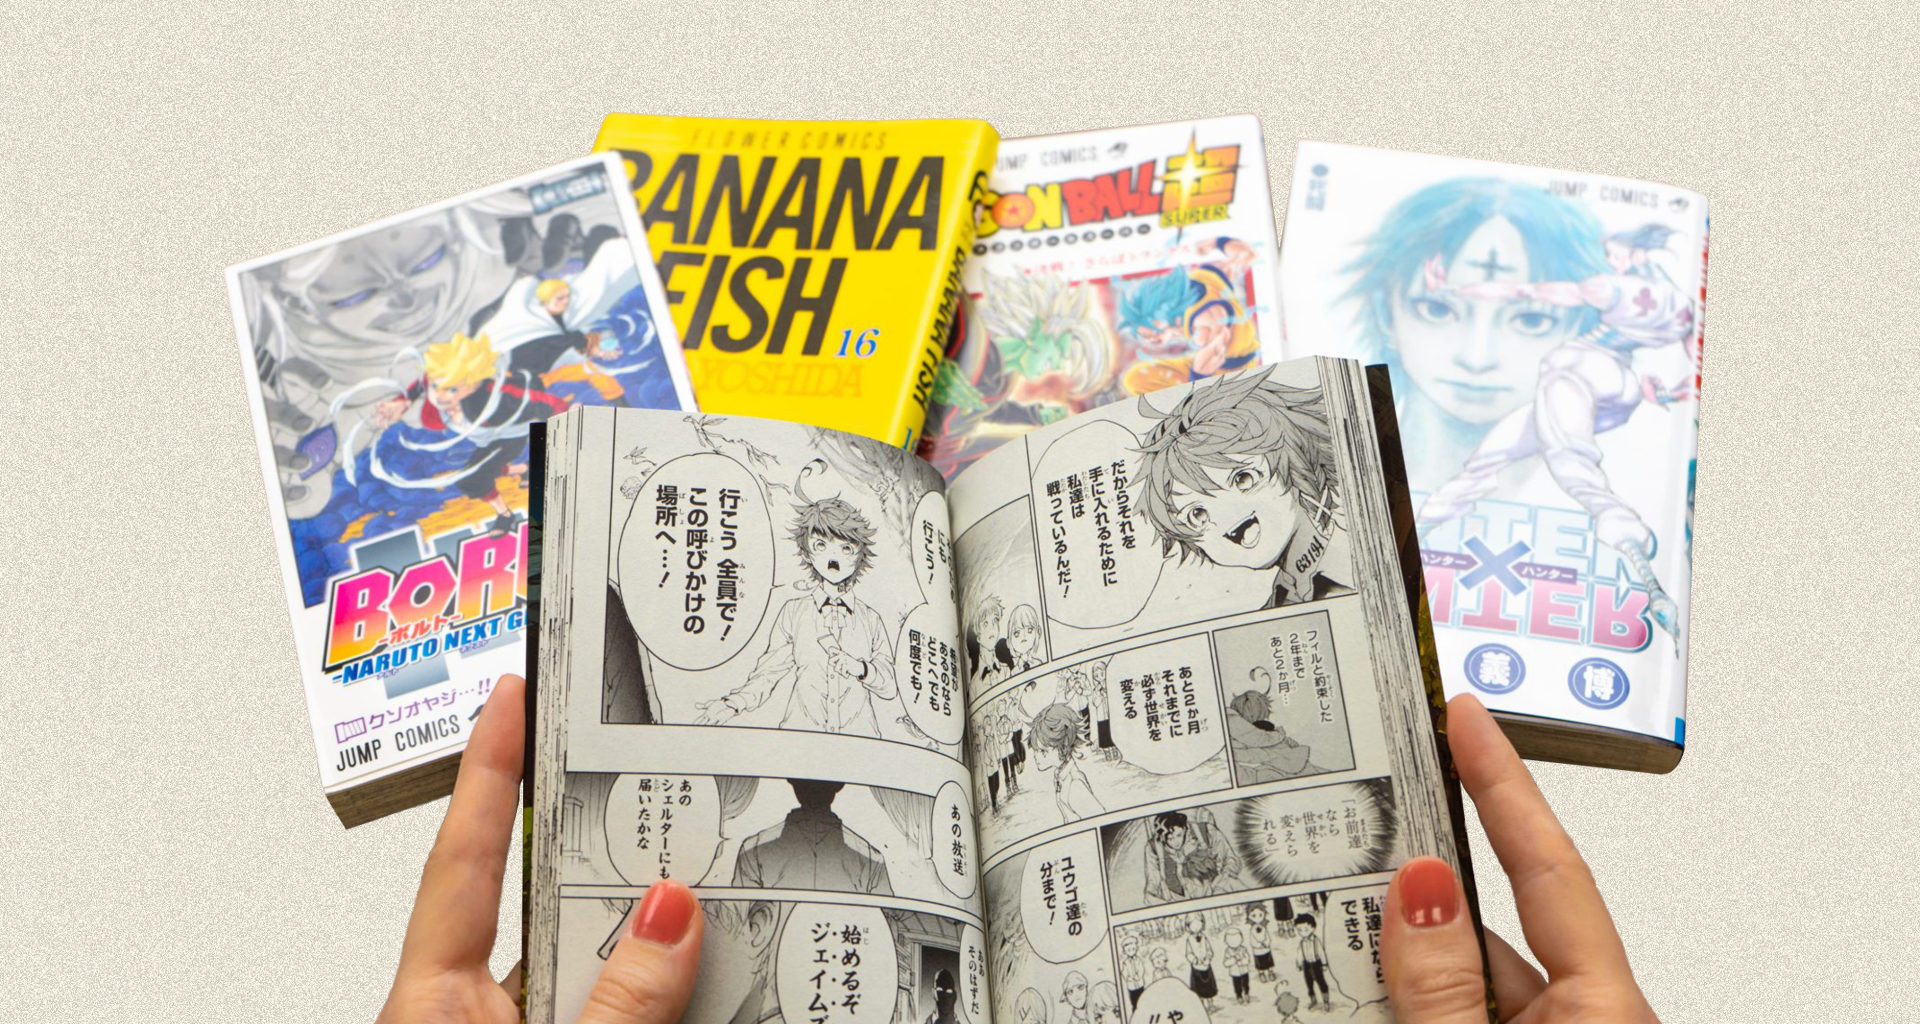 Robar a Segundo grado embudo Chile otaku: la venta de mangas se multiplicó siete veces en un año